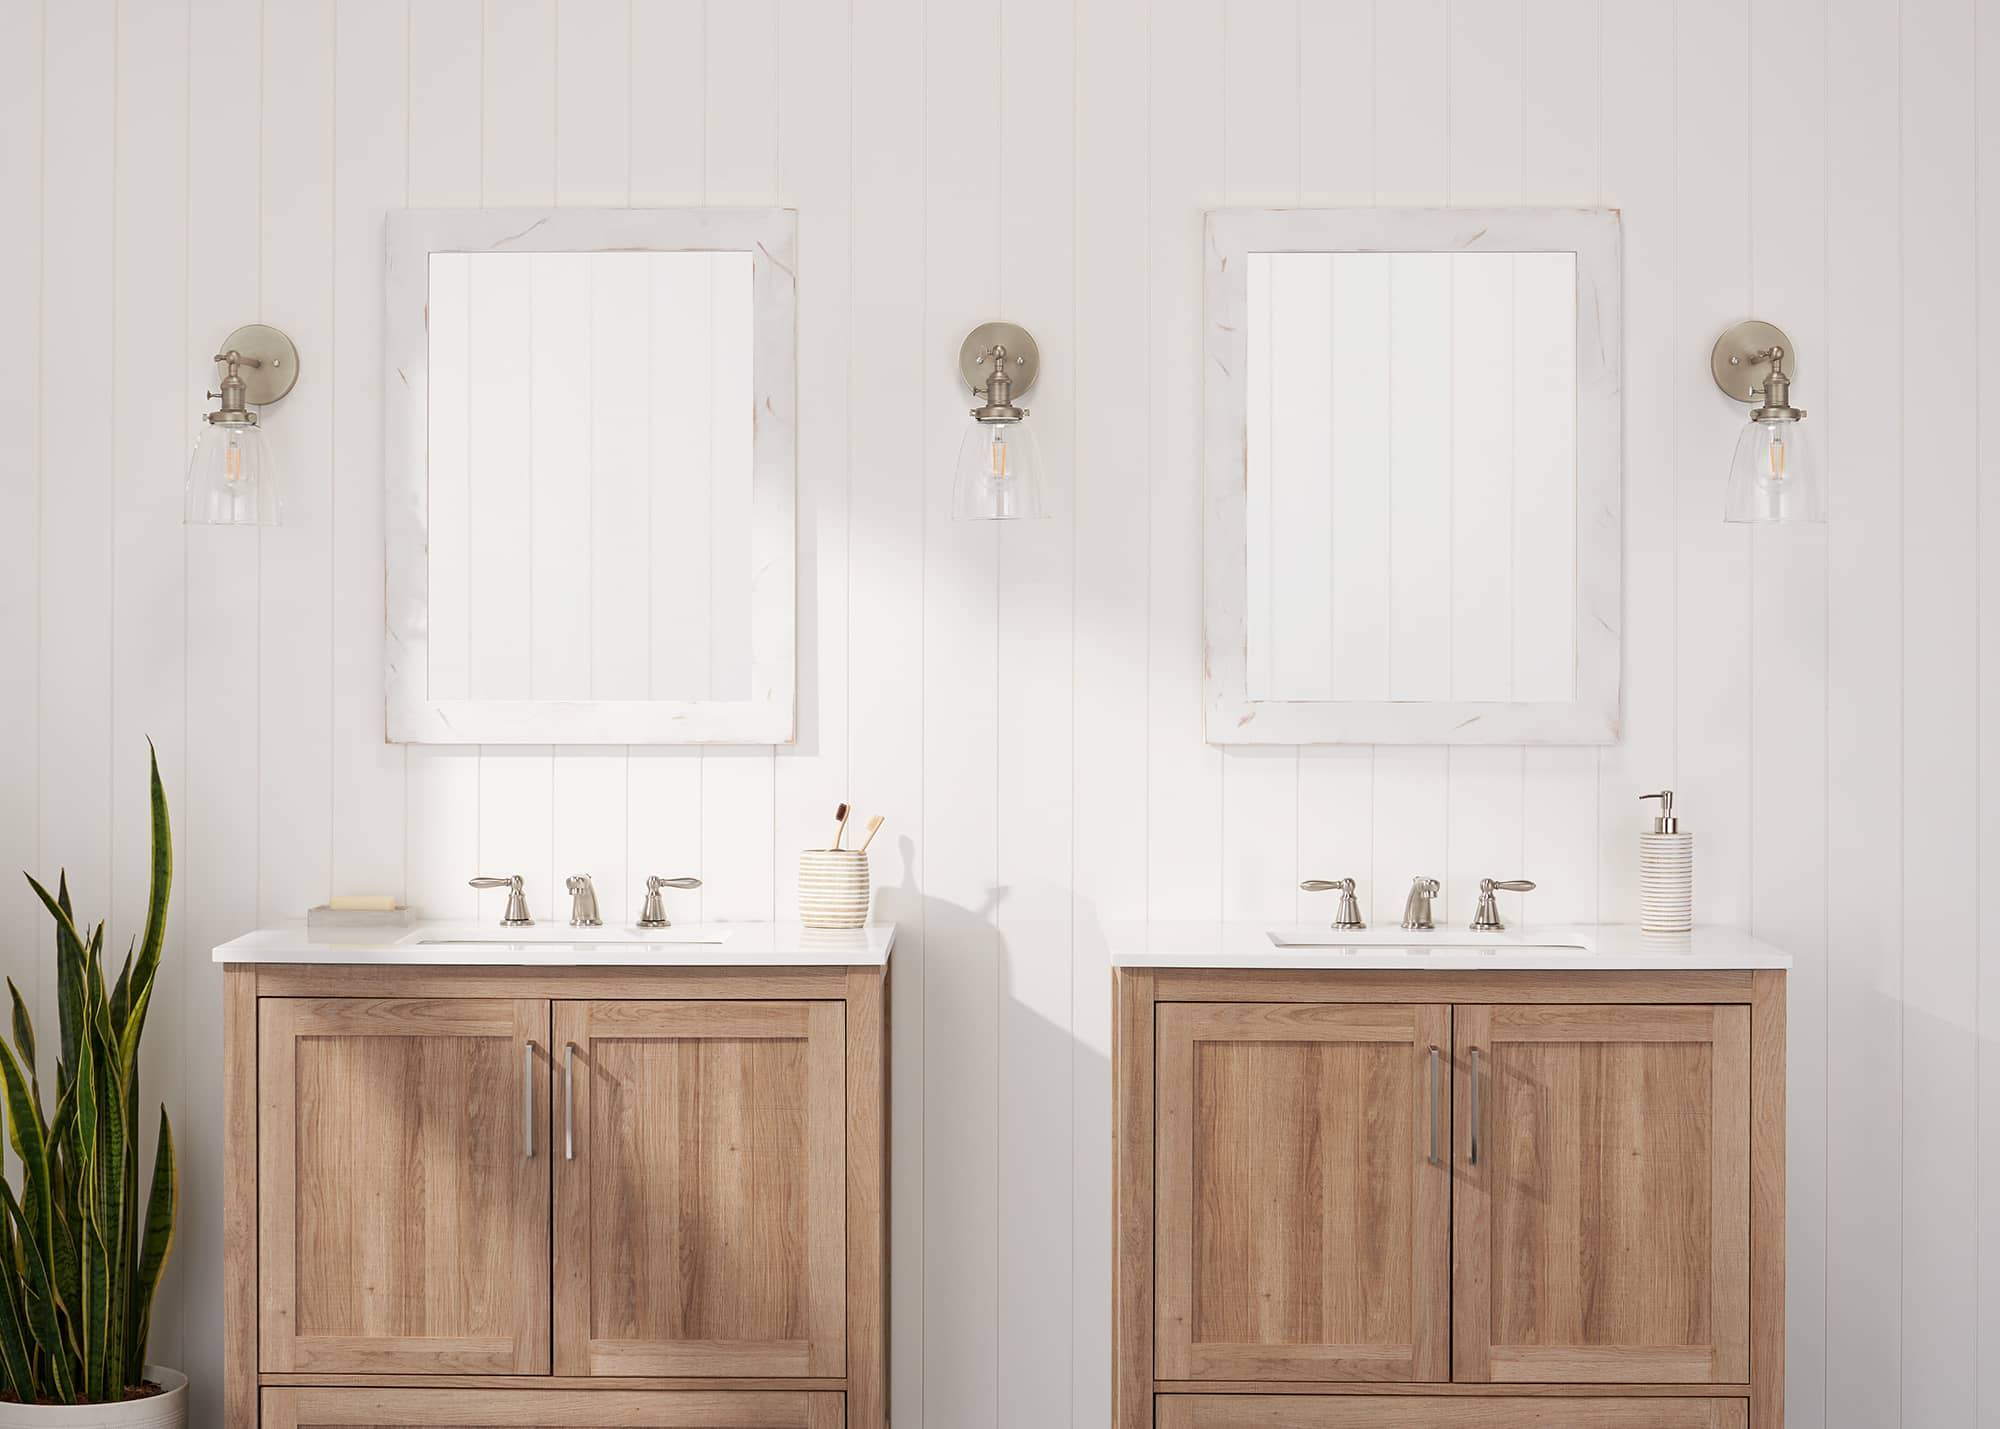 Two white farmhouse style vanity mirror